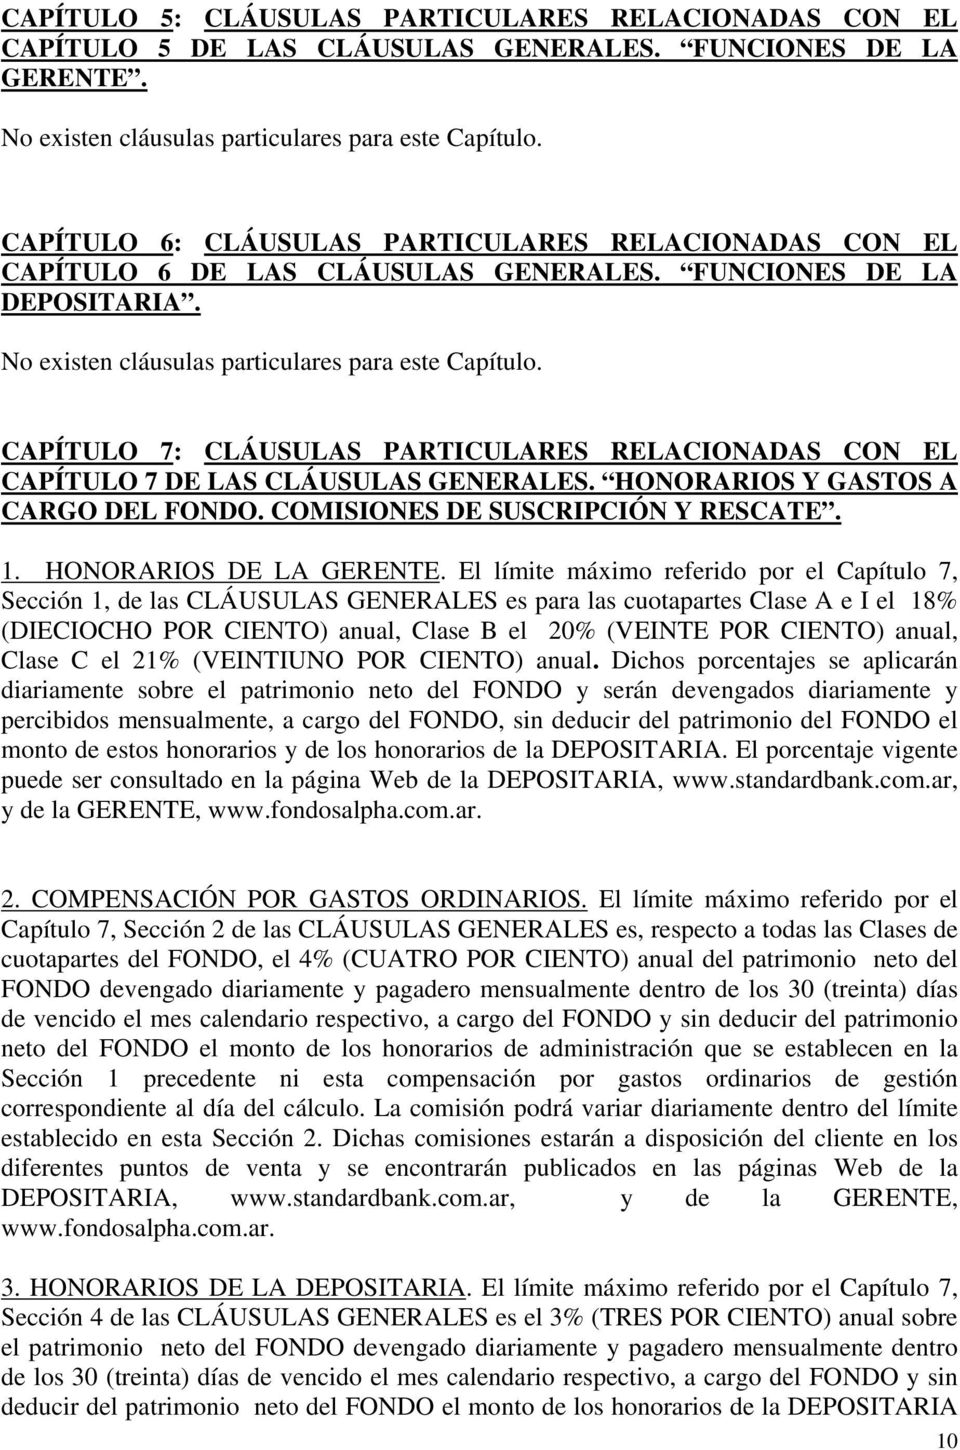 CAPÍTULO 7: CLÁUSULAS PARTICULARES RELACIONADAS CON EL CAPÍTULO 7 DE LAS CLÁUSULAS GENERALES. HONORARIOS Y GASTOS A CARGO DEL FONDO. COMISIONES DE SUSCRIPCIÓN Y RESCATE. 1. HONORARIOS DE LA GERENTE.